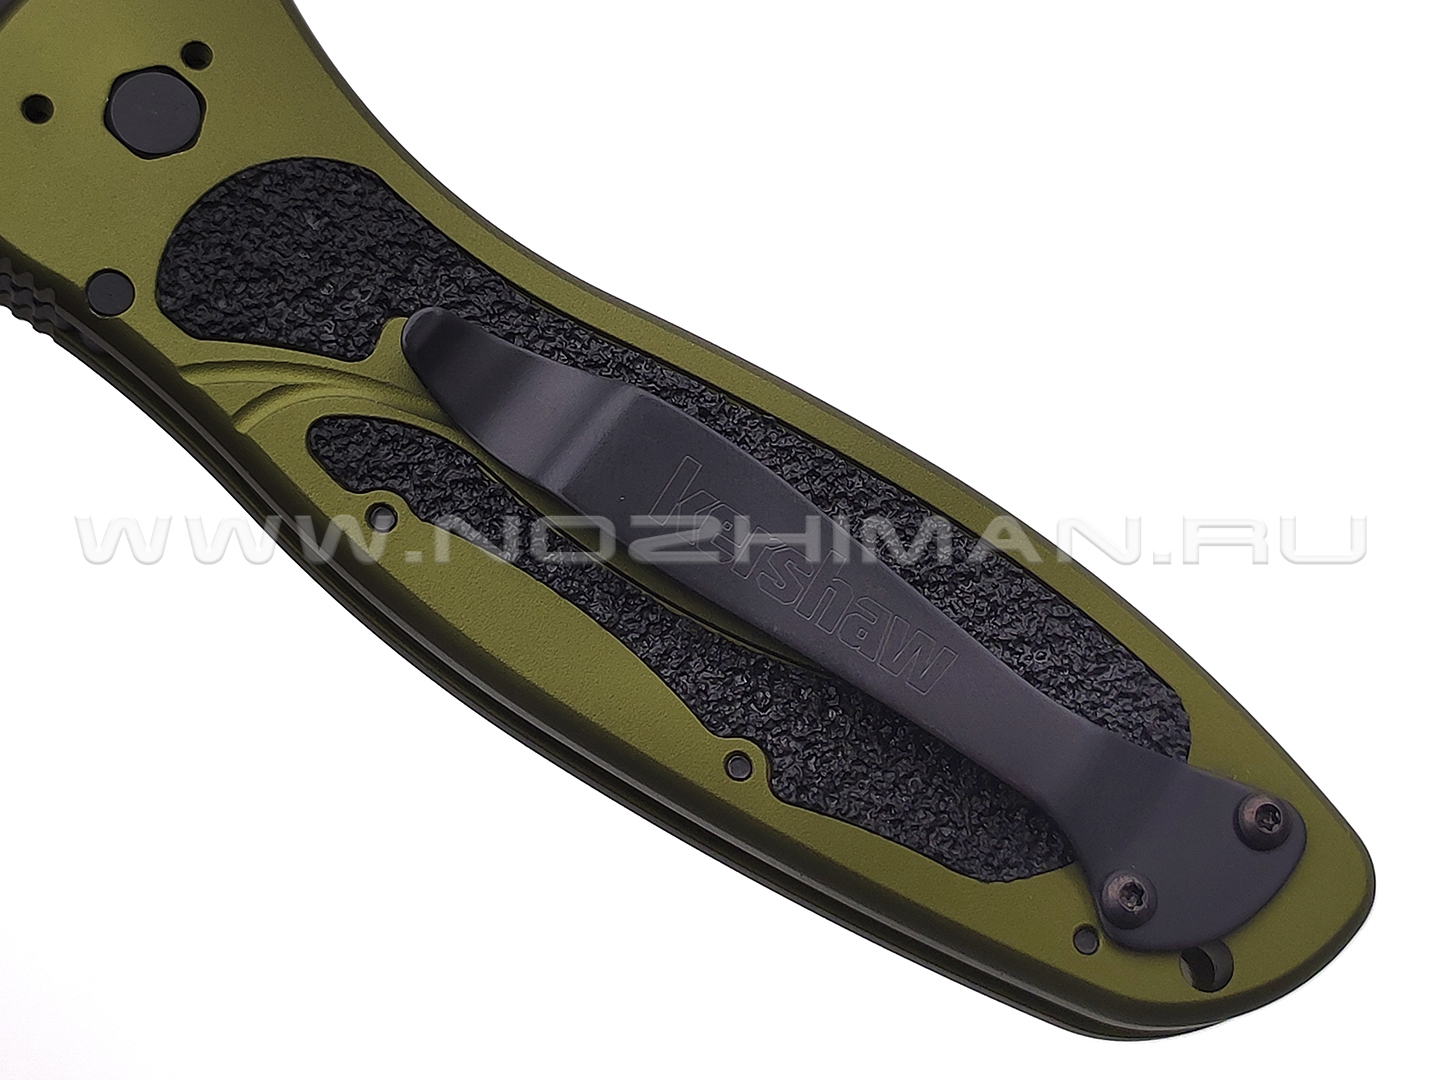 Нож Kershaw Blur 1670OLBLK сталь 14C28N DLC, рукоять Trac-Tec, Aluminum 6061-T6 green